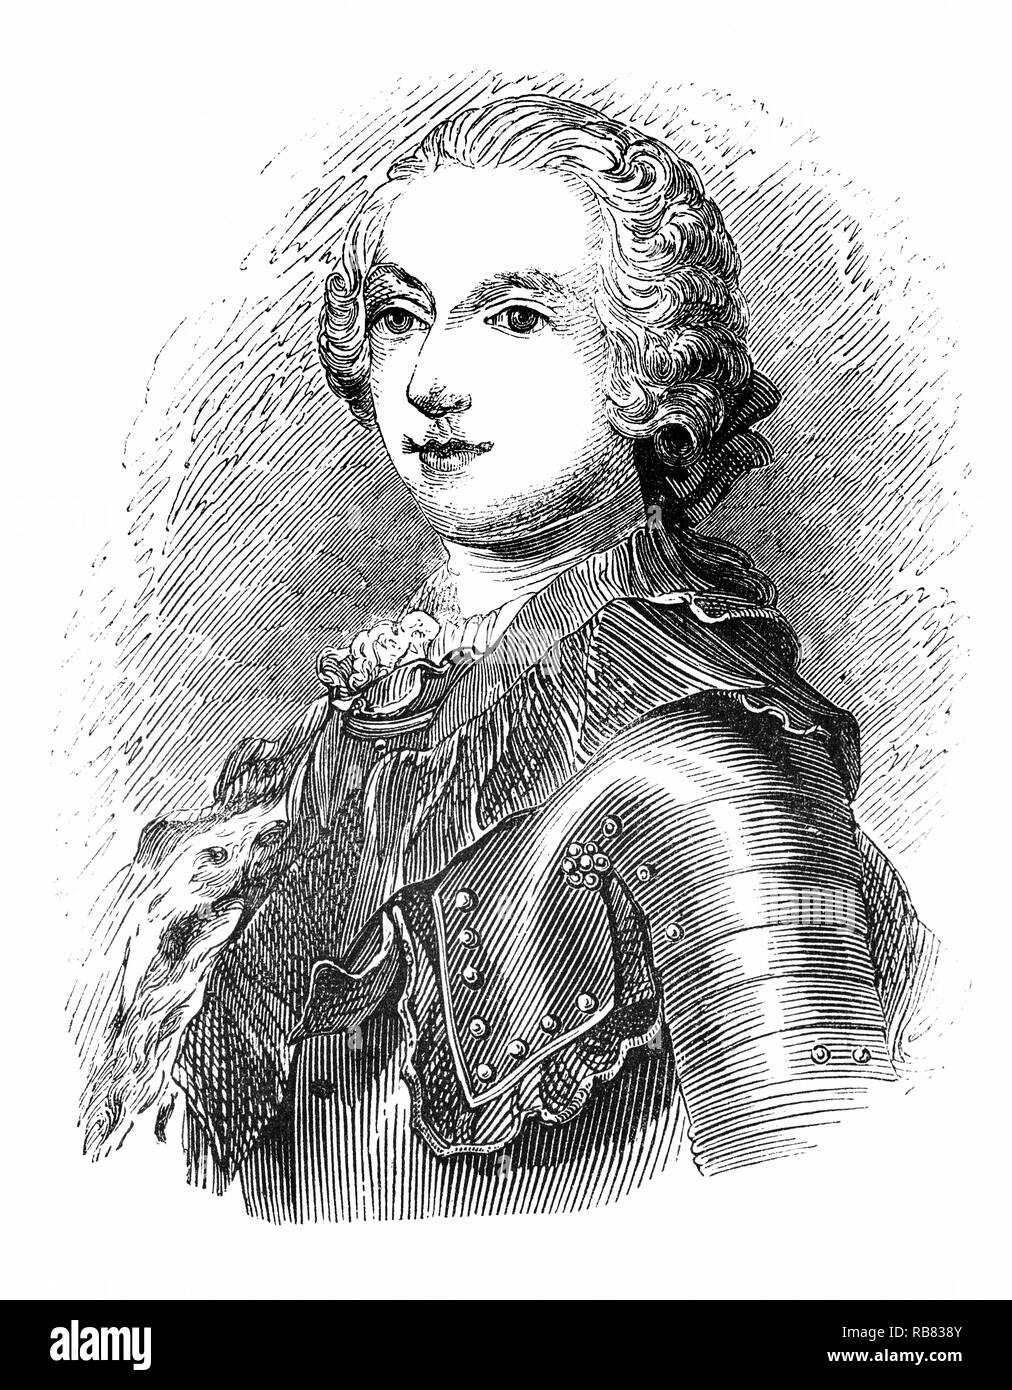 Portrait de Charles Édouard Stuart (1720-1788), fils aîné de James Francis Edward Stuart, petit-fils de Jacques II et VII et après 1766, le Stuart prestataire à la trône de Grande-Bretagne. Il wasknown «le Jeune Prétendant' ou 'le jeune chevalier' et dans la mémoire populaire comme 'Bonnie Prince Charlie', mieux connu pour son rôle dans l'augmentation de 1745 ; sa défaite à Culloden en avril 1746 a mis fin à la cause de Stuart, et les tentatives subséquentes (comme l'invasion française, en 1759) n'a pas réussi à se concrétiser. Sa fuite après le soulèvement a amené à être présenté comme une figure romantique de l'échec héroïque. Banque D'Images